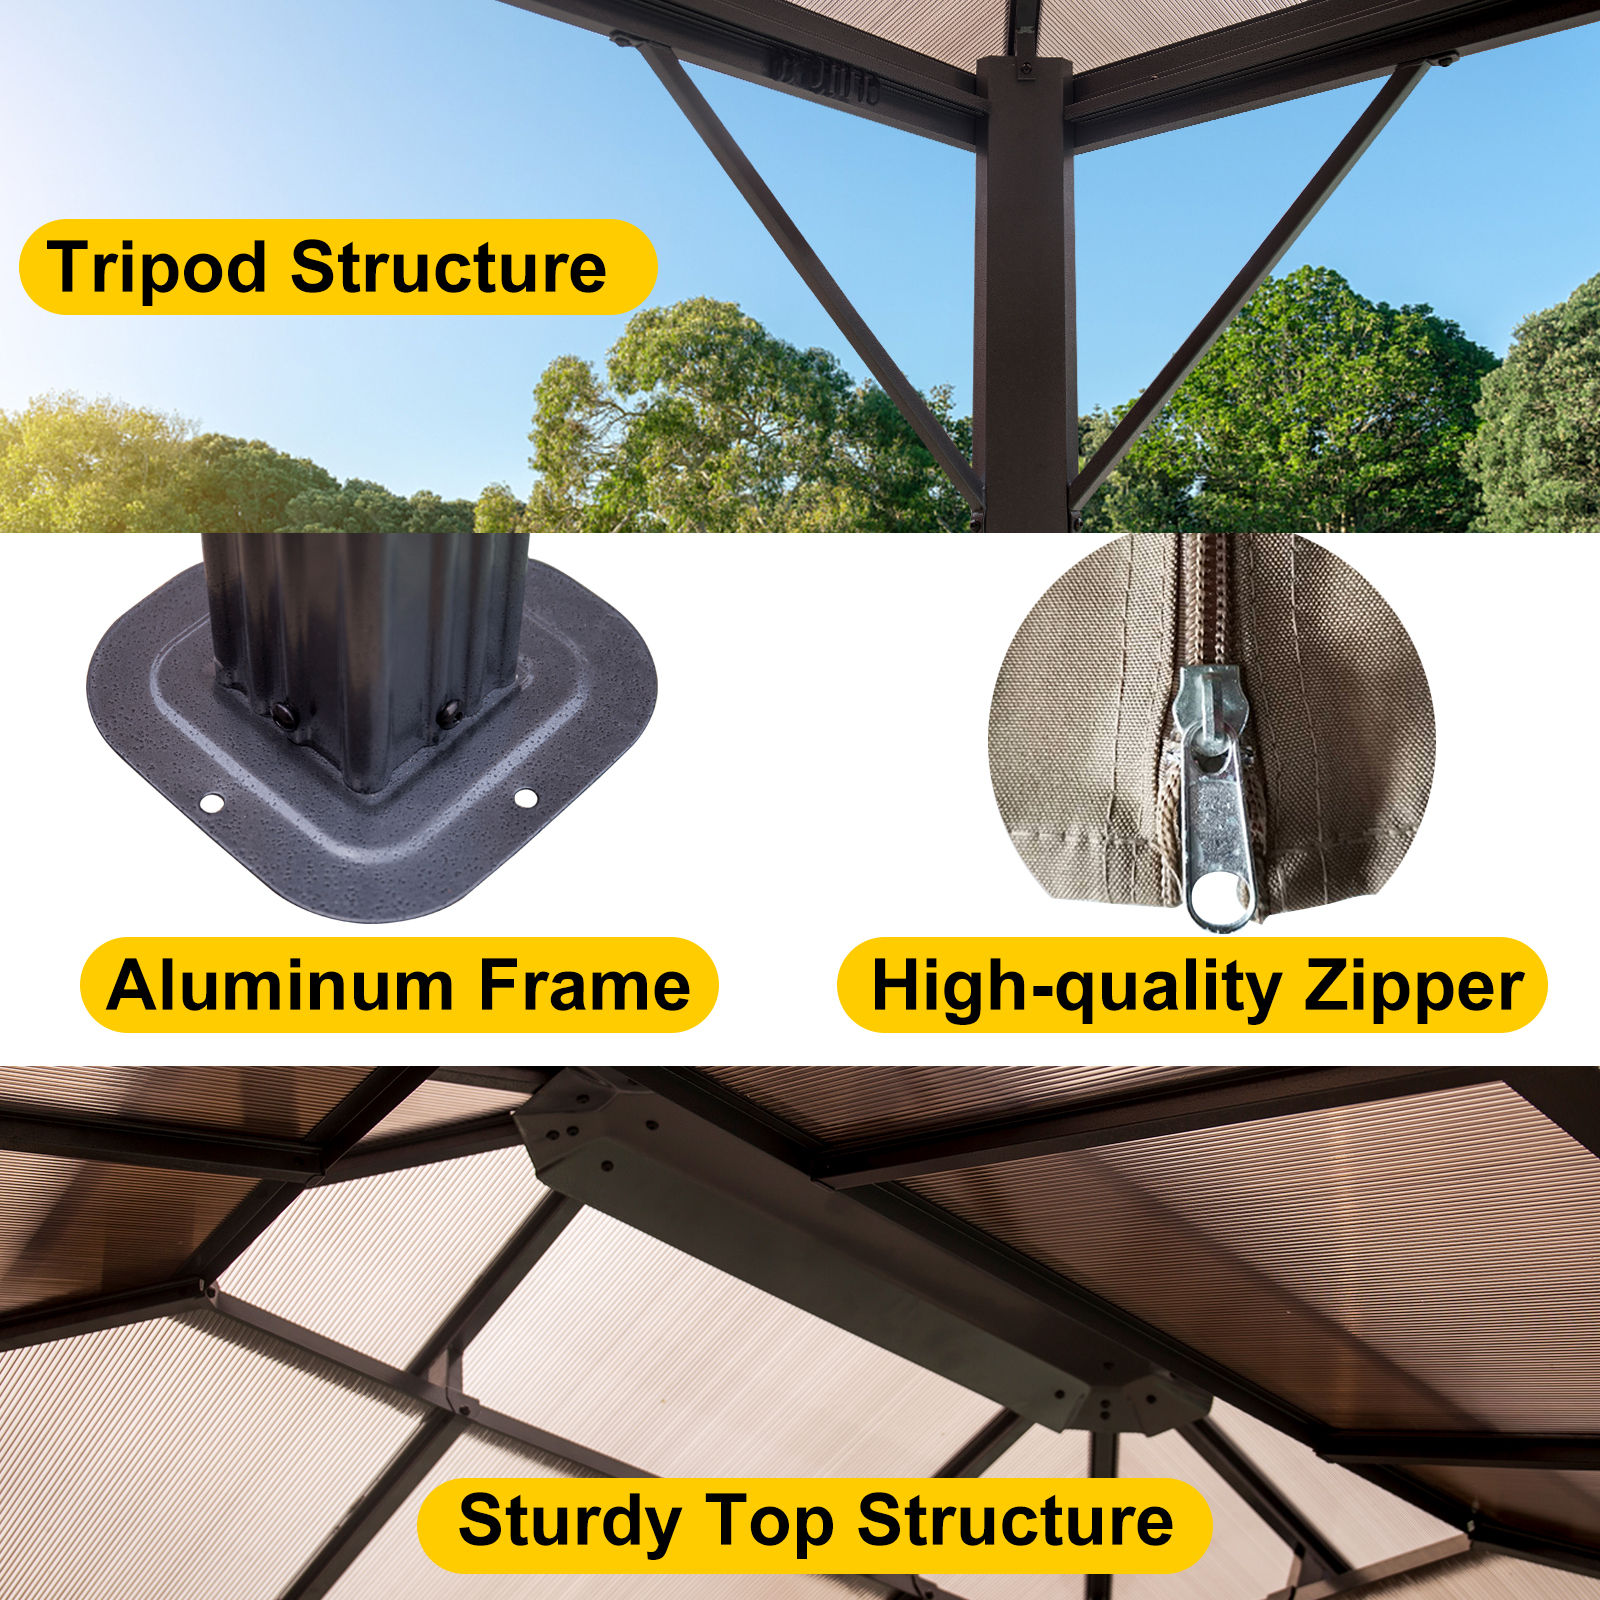 Tonnelle de jardin 3x3 m design en optique bois toit en acier 4